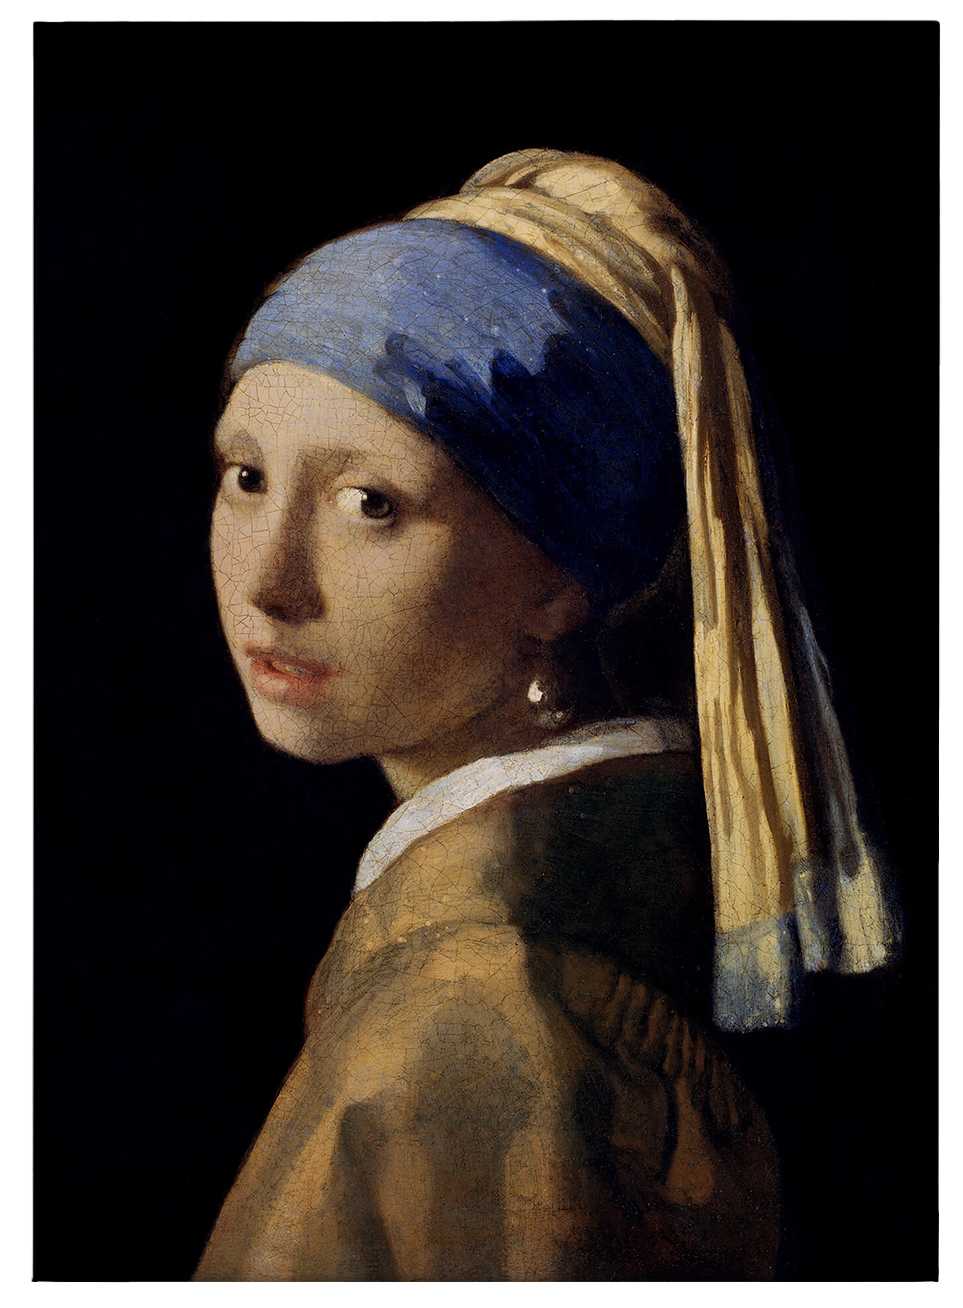             Leinwandbild "Das Mädchen mit dem Perlenohrring" von Dürer – 0,50 m x 0,70 m
        